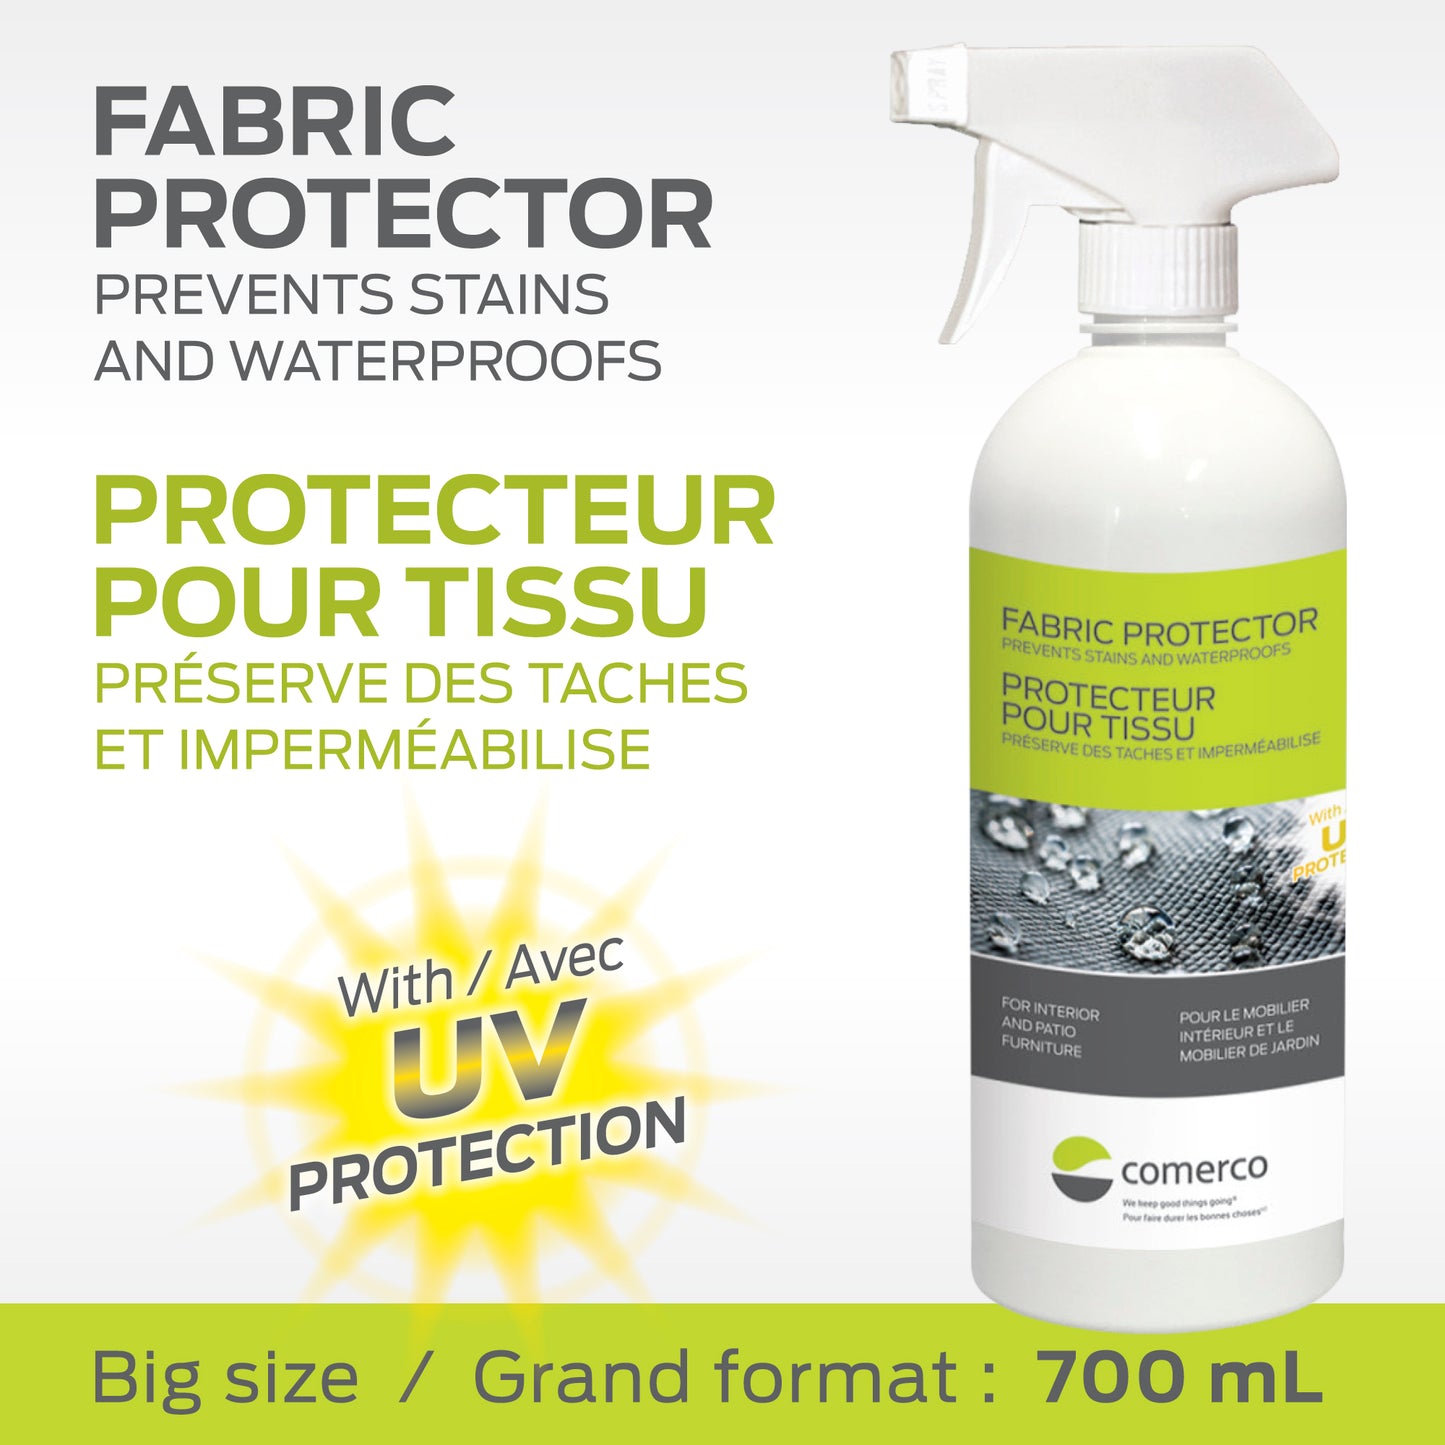 Protecteur pour tissu - préserve des taches et imperméabilise - 700 ml